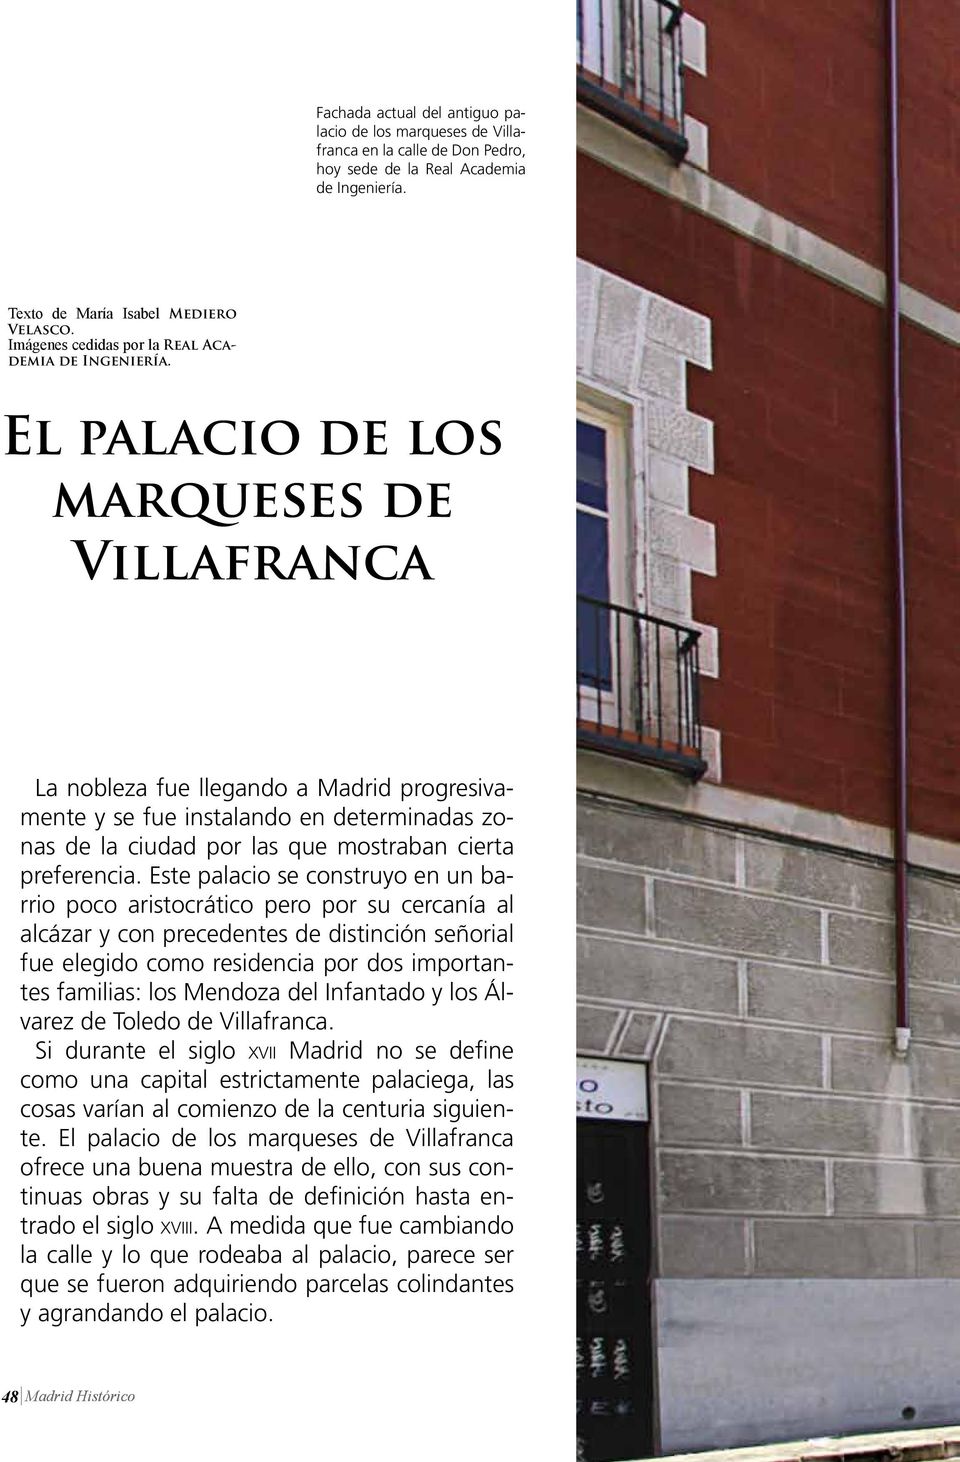 El palacio de los marqueses de Villafranca La nobleza fue llegando a Madrid progresivamente y se fue instalando en determinadas zonas de la ciudad por las que mostraban cierta preferencia.